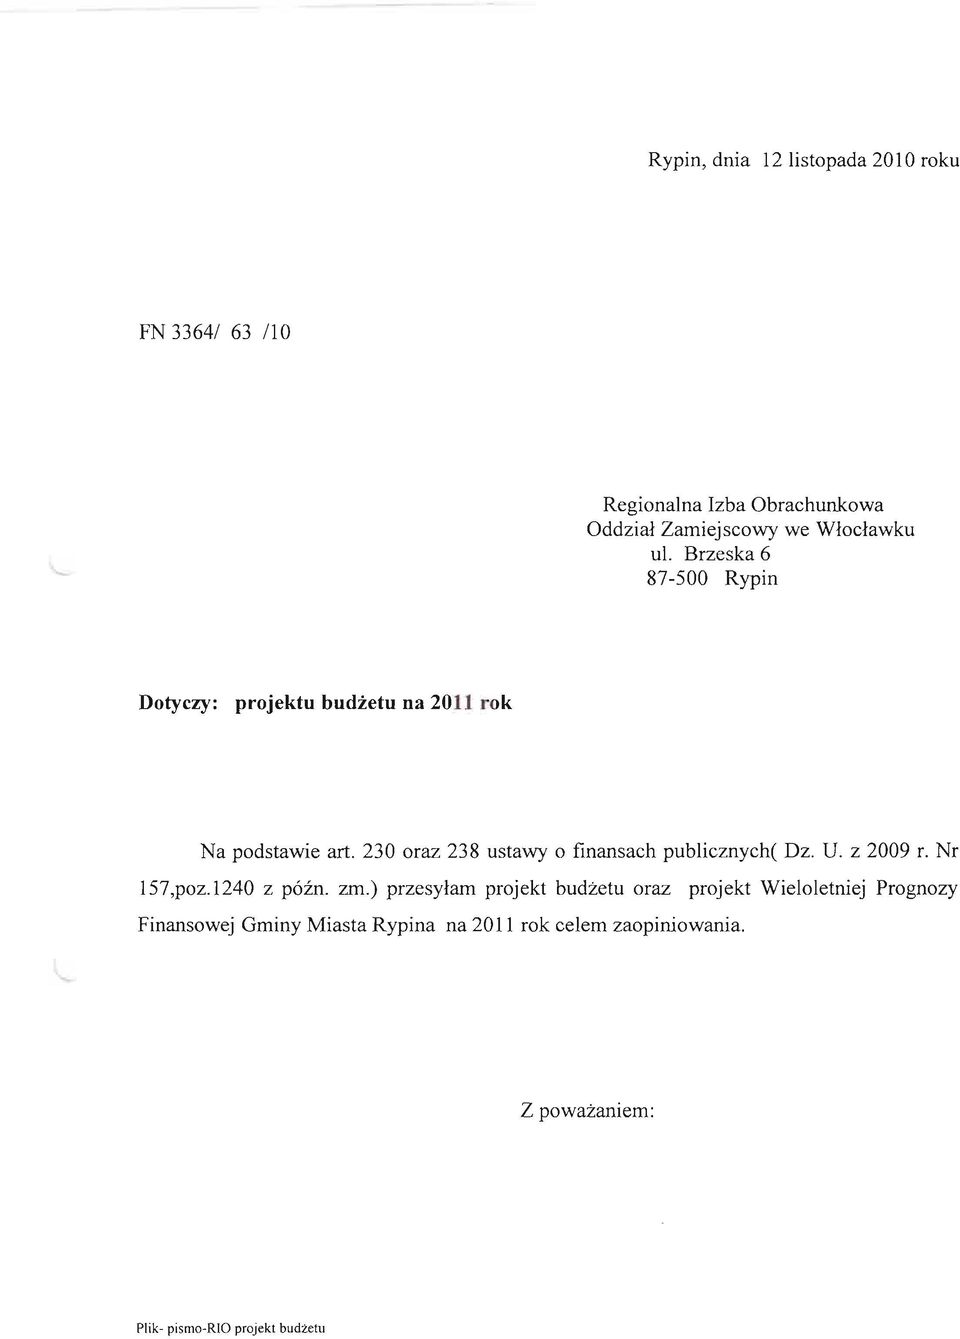 Brzeska 6 87-500 Rypin Dotyczy: projektu budżetu na 2011 rok Na podstawie art. 230 oraz 238 ustawy o finansach publicznych( Dz. U. z 2009 r.